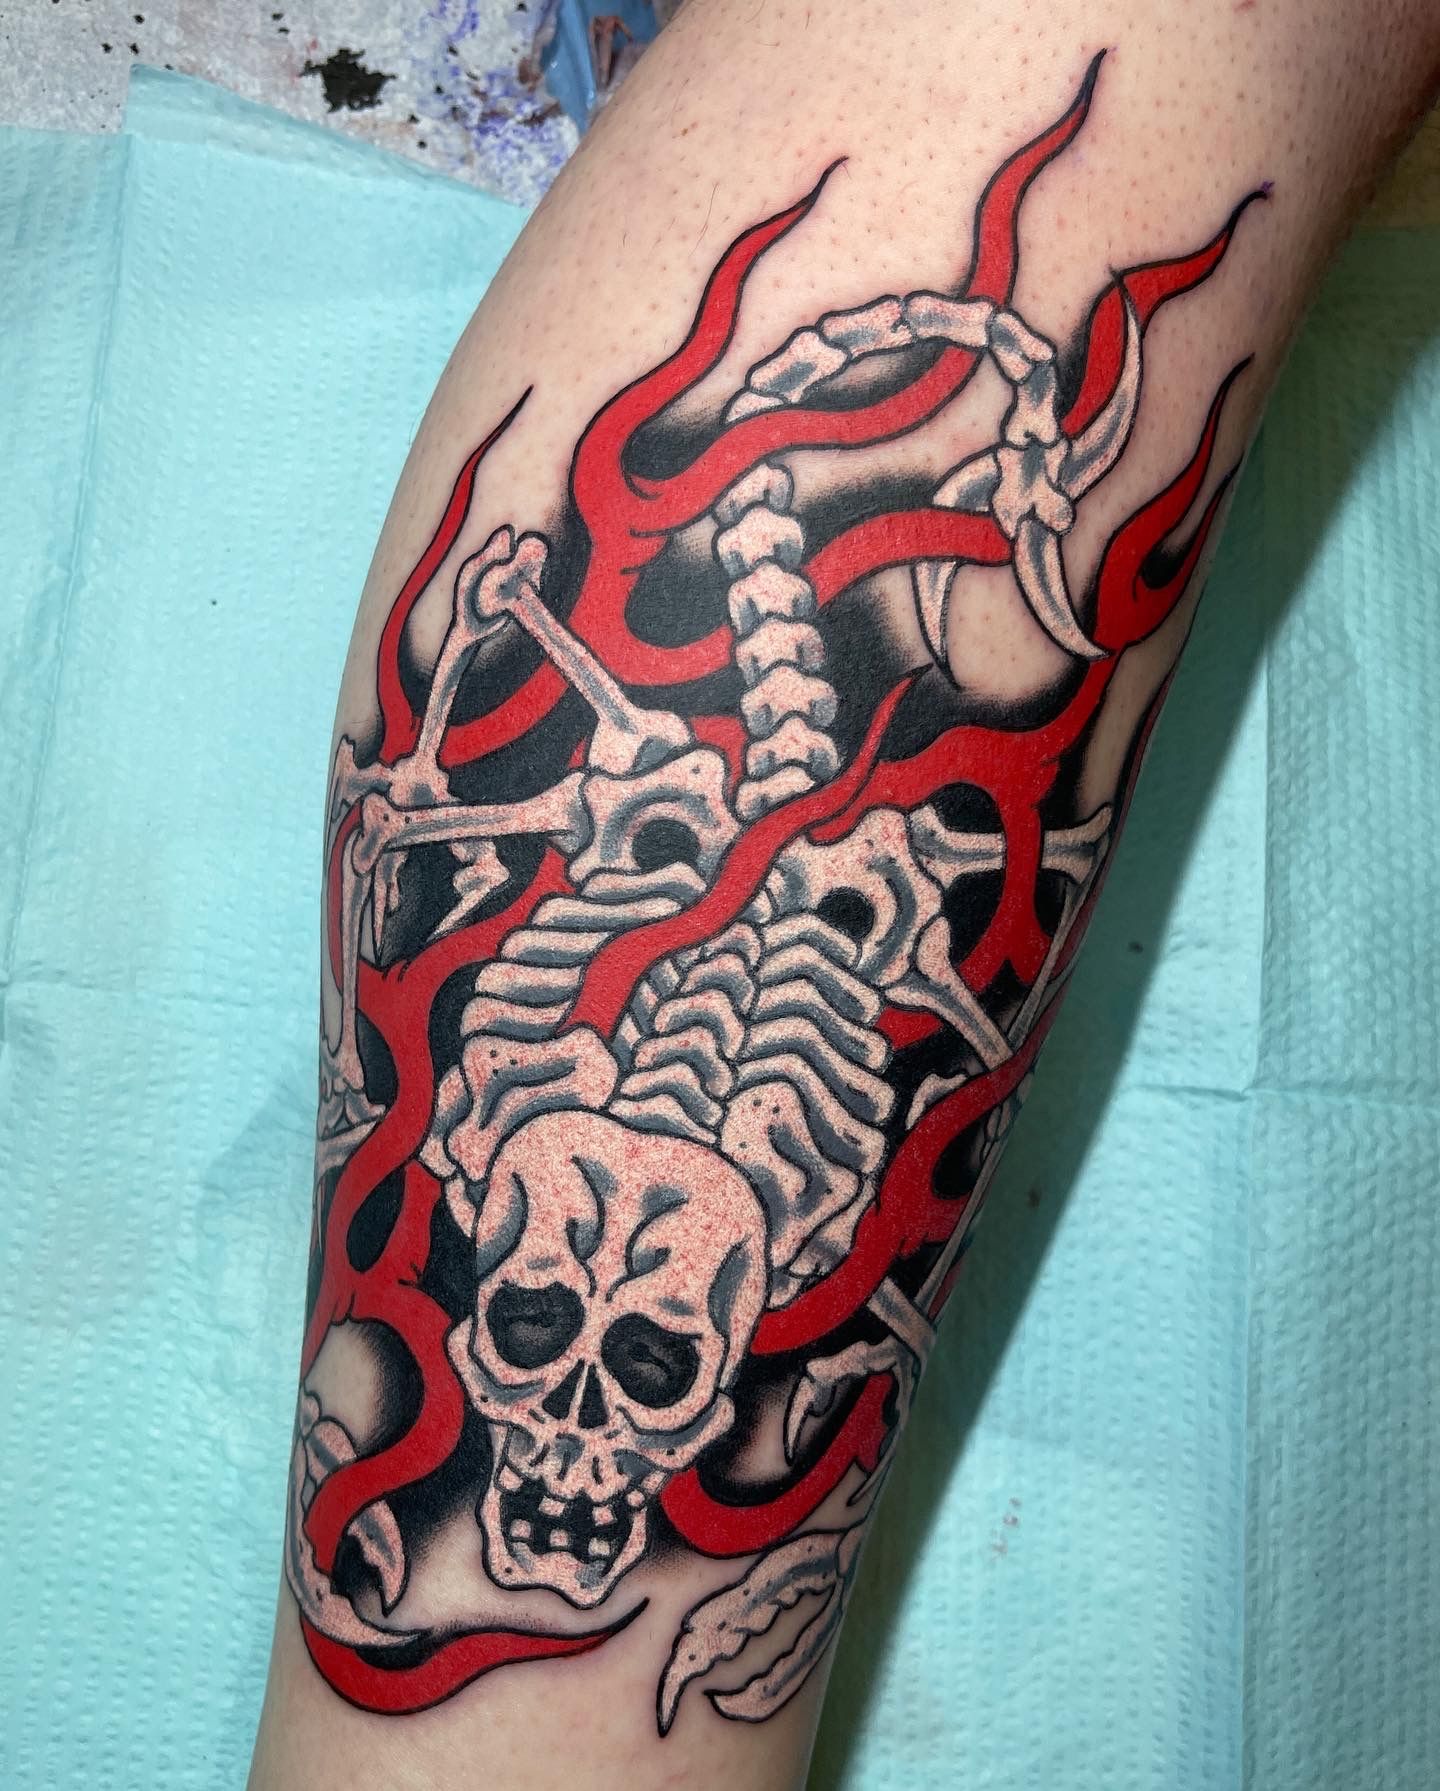 Skull Tattoos and Snake | Tattoos, Skull tattoos, Snake tattoo